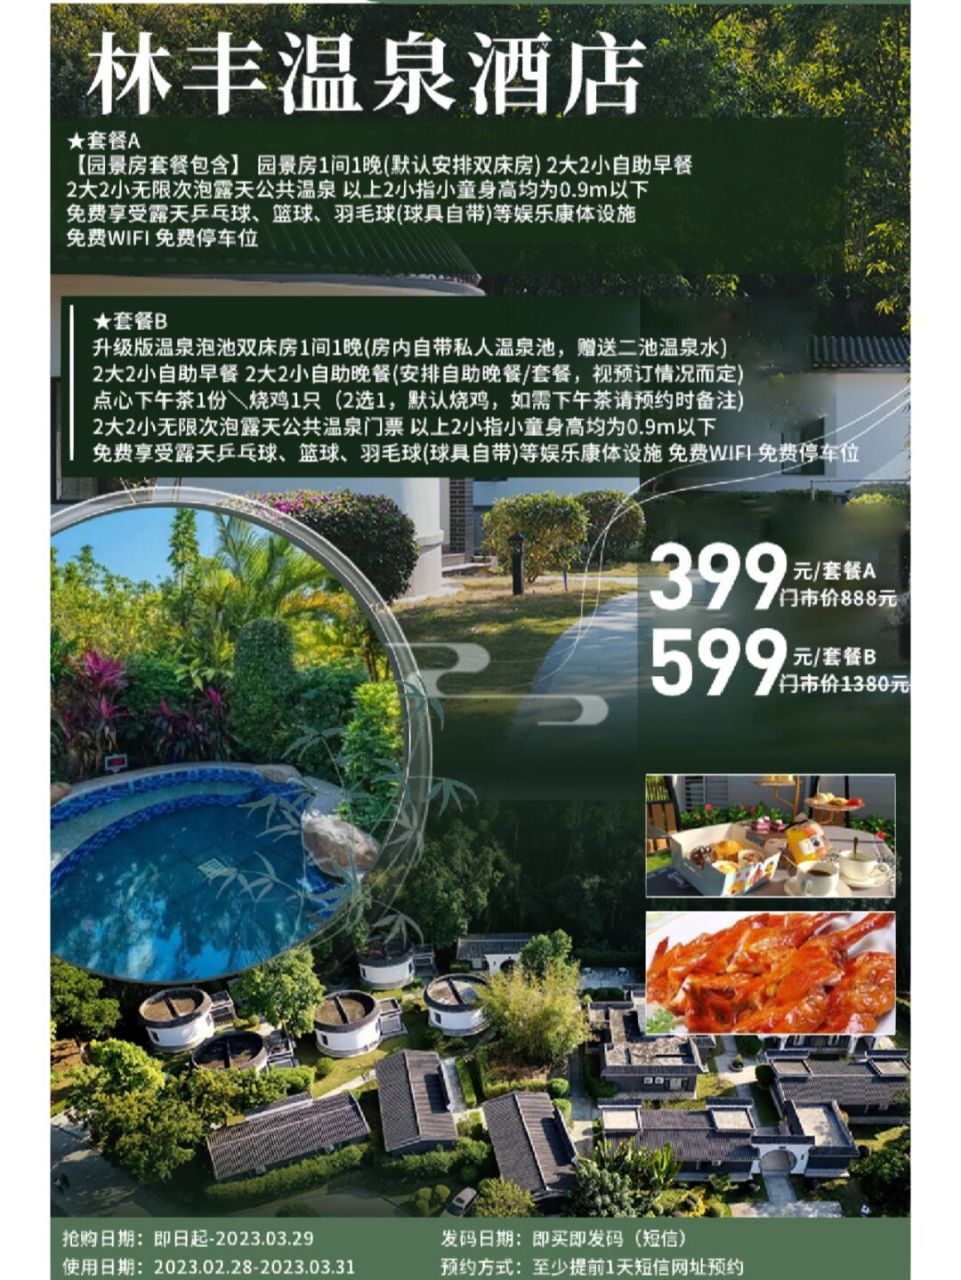 惠州龙门温泉价目表图片